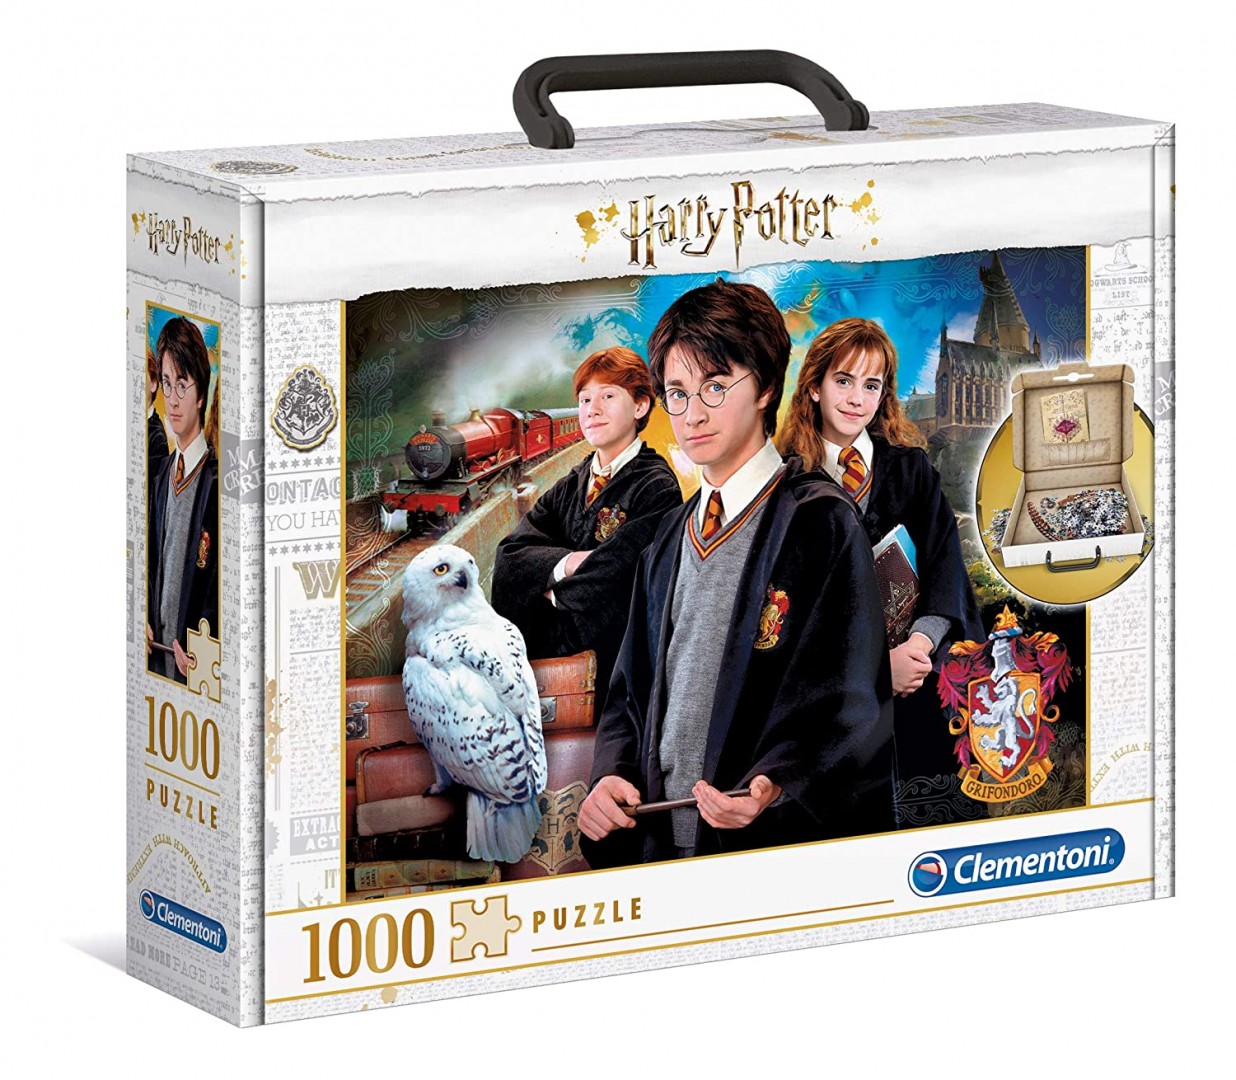 Puzzle Valigetta da 1000 Pezzi - Harry Potter